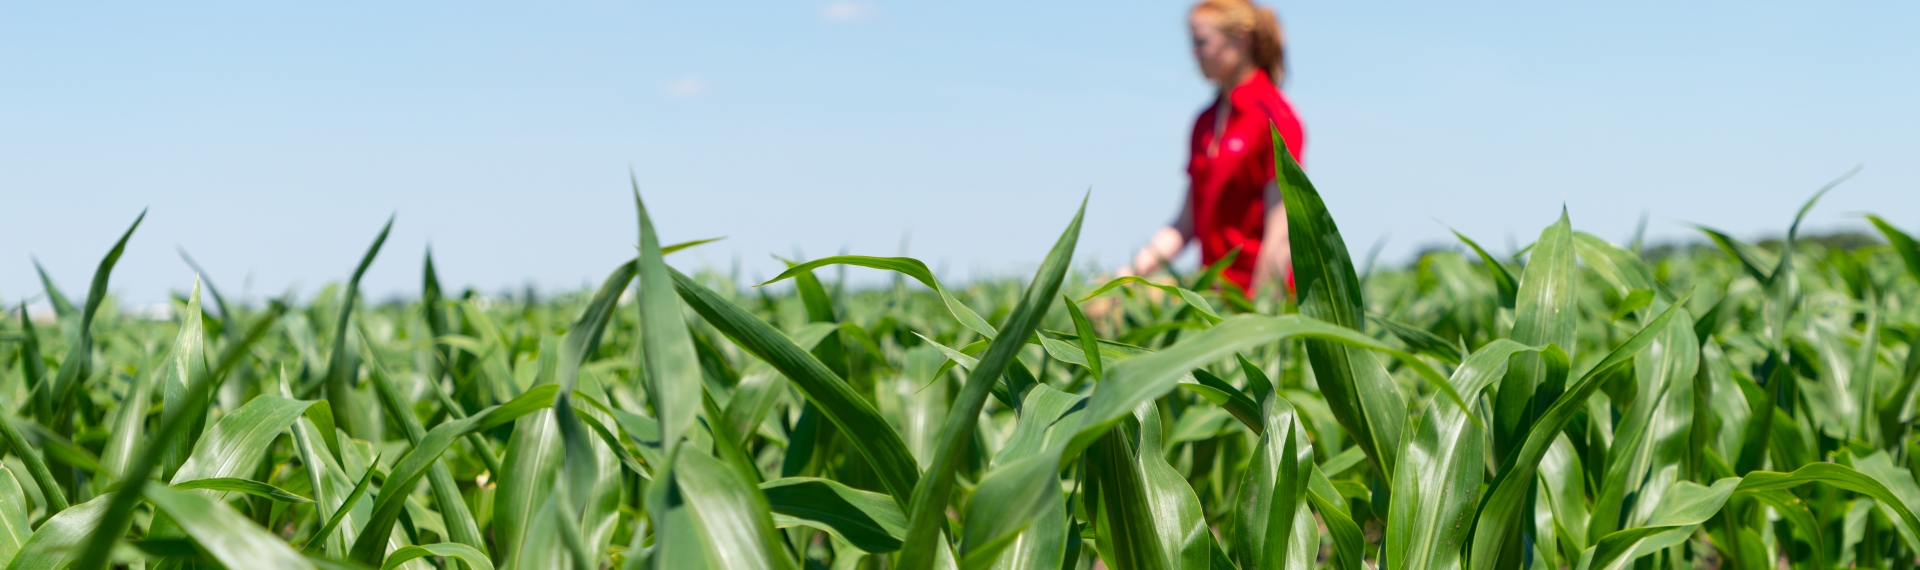 Girl in a Field of Corn